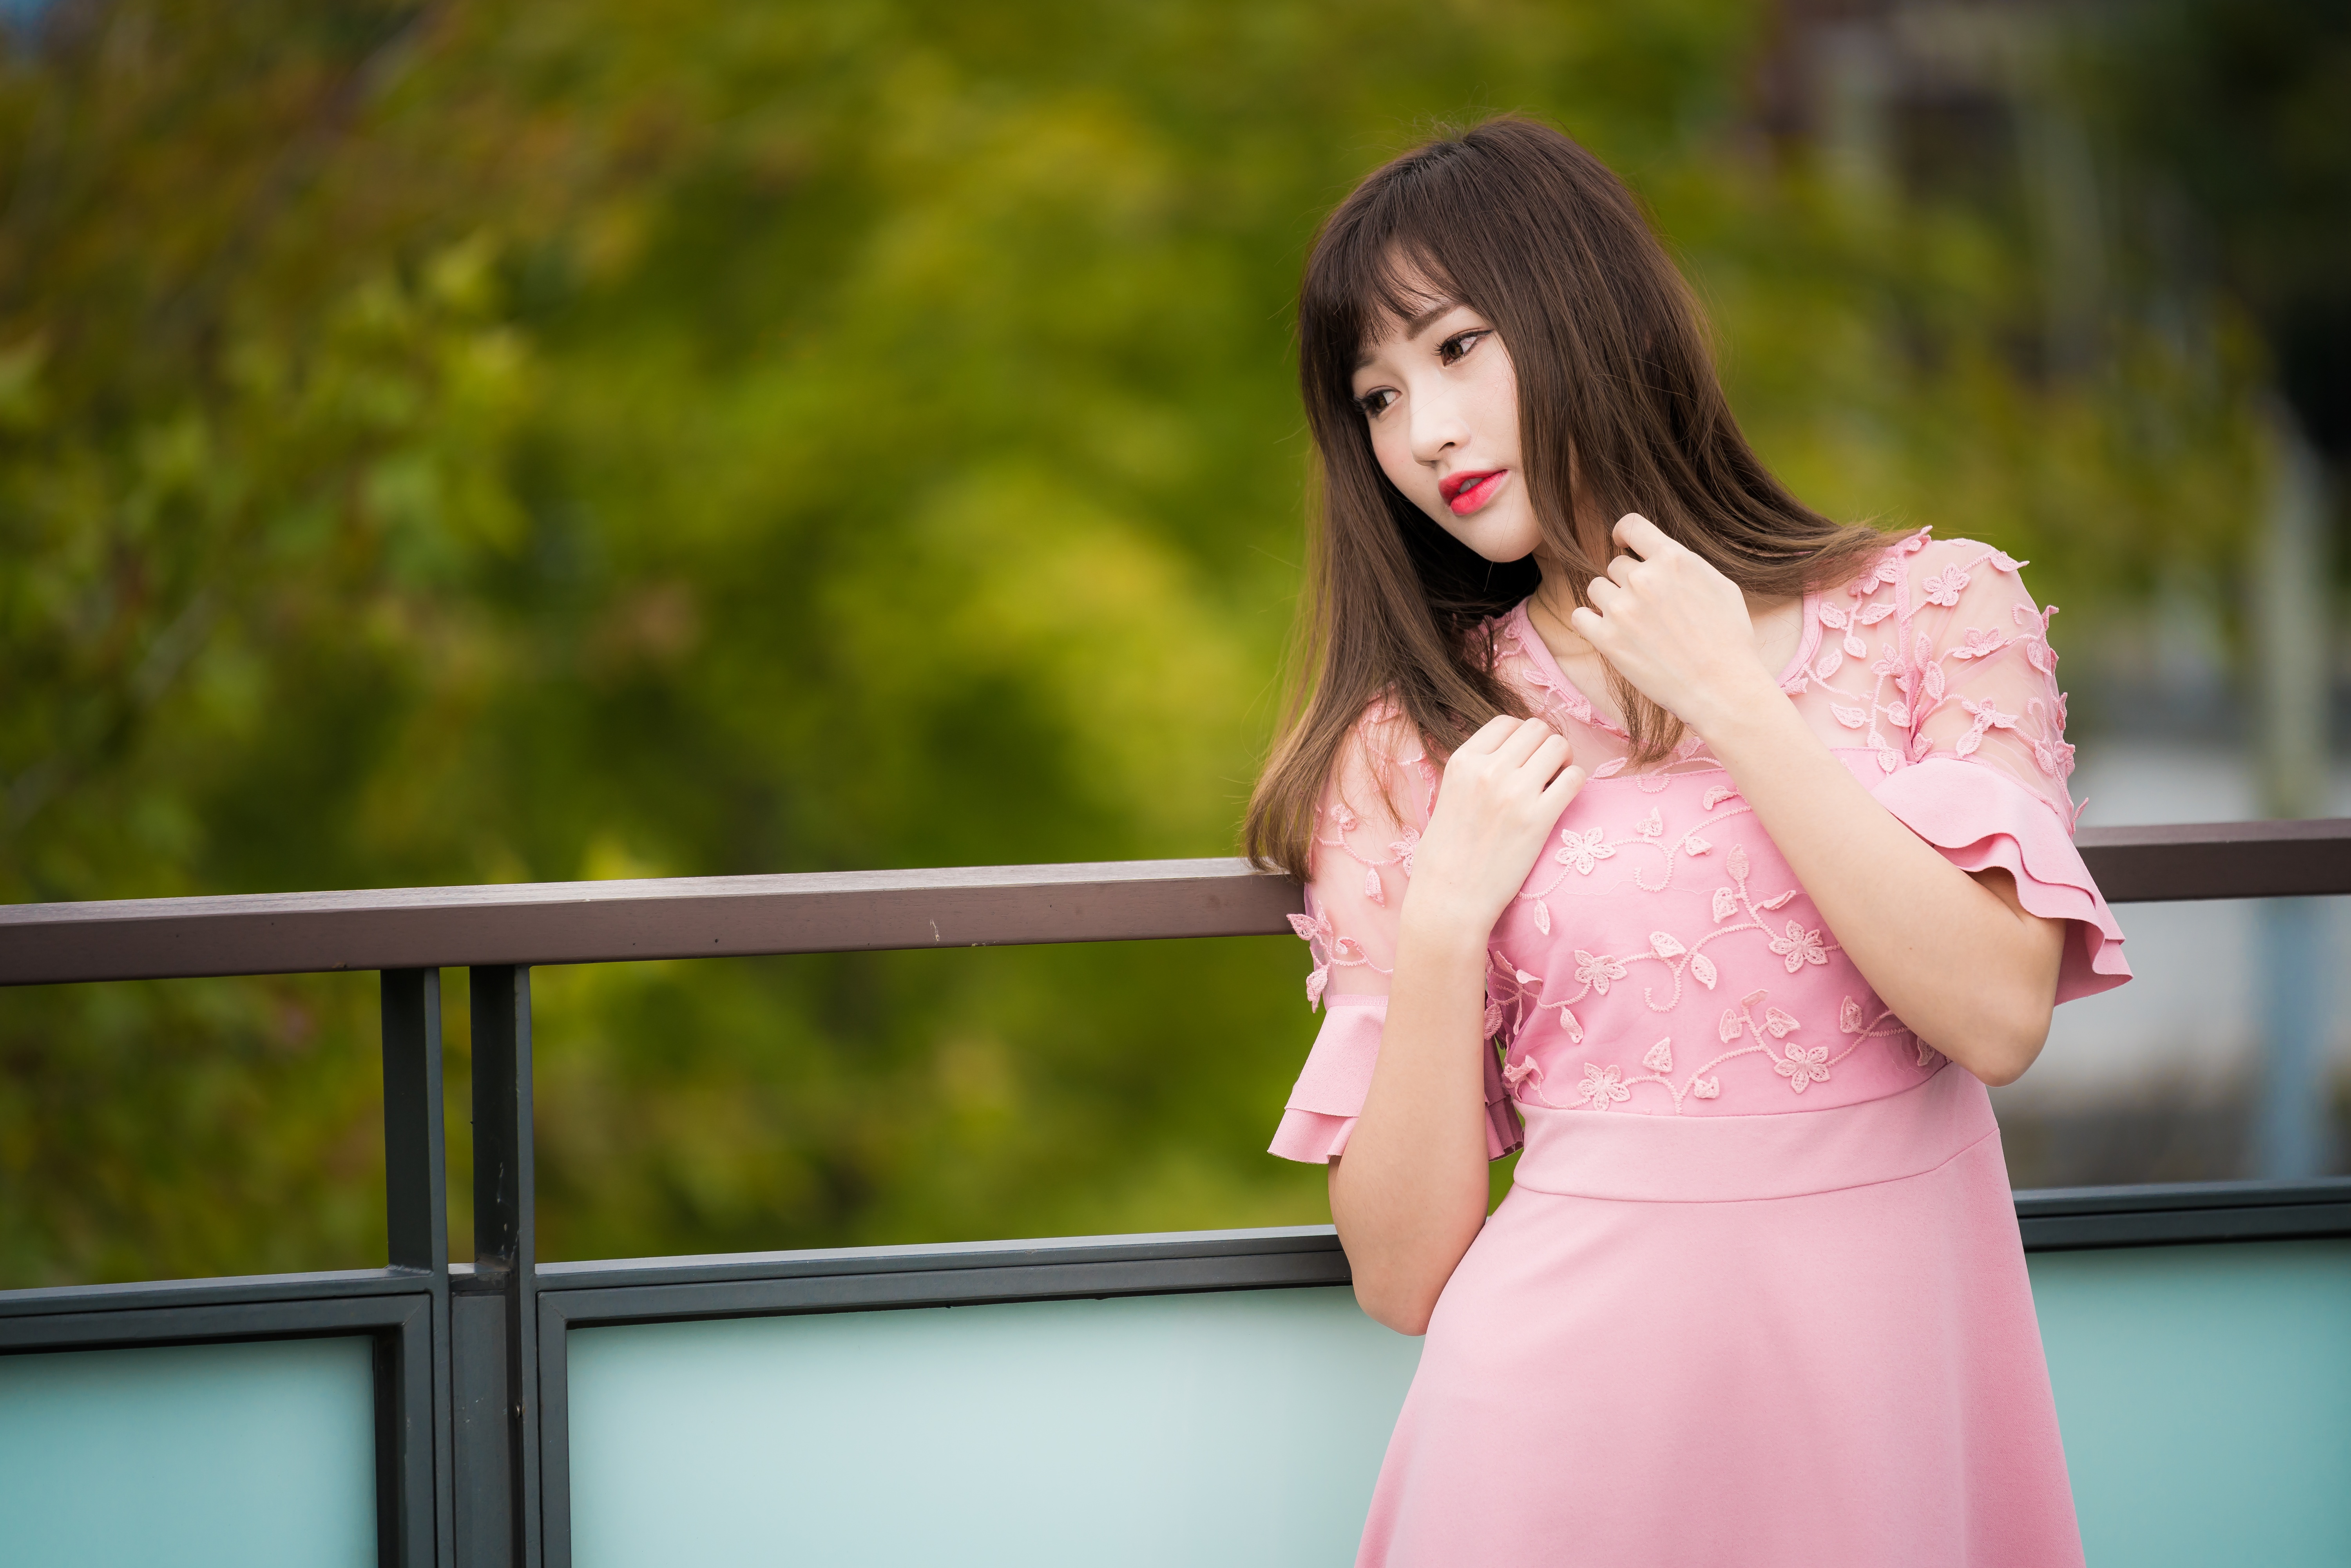 Download Brunette Lipstick Pink Dress Depth Of Field Model Woman Asian 4k Ultra Hd Wallpaper 5131